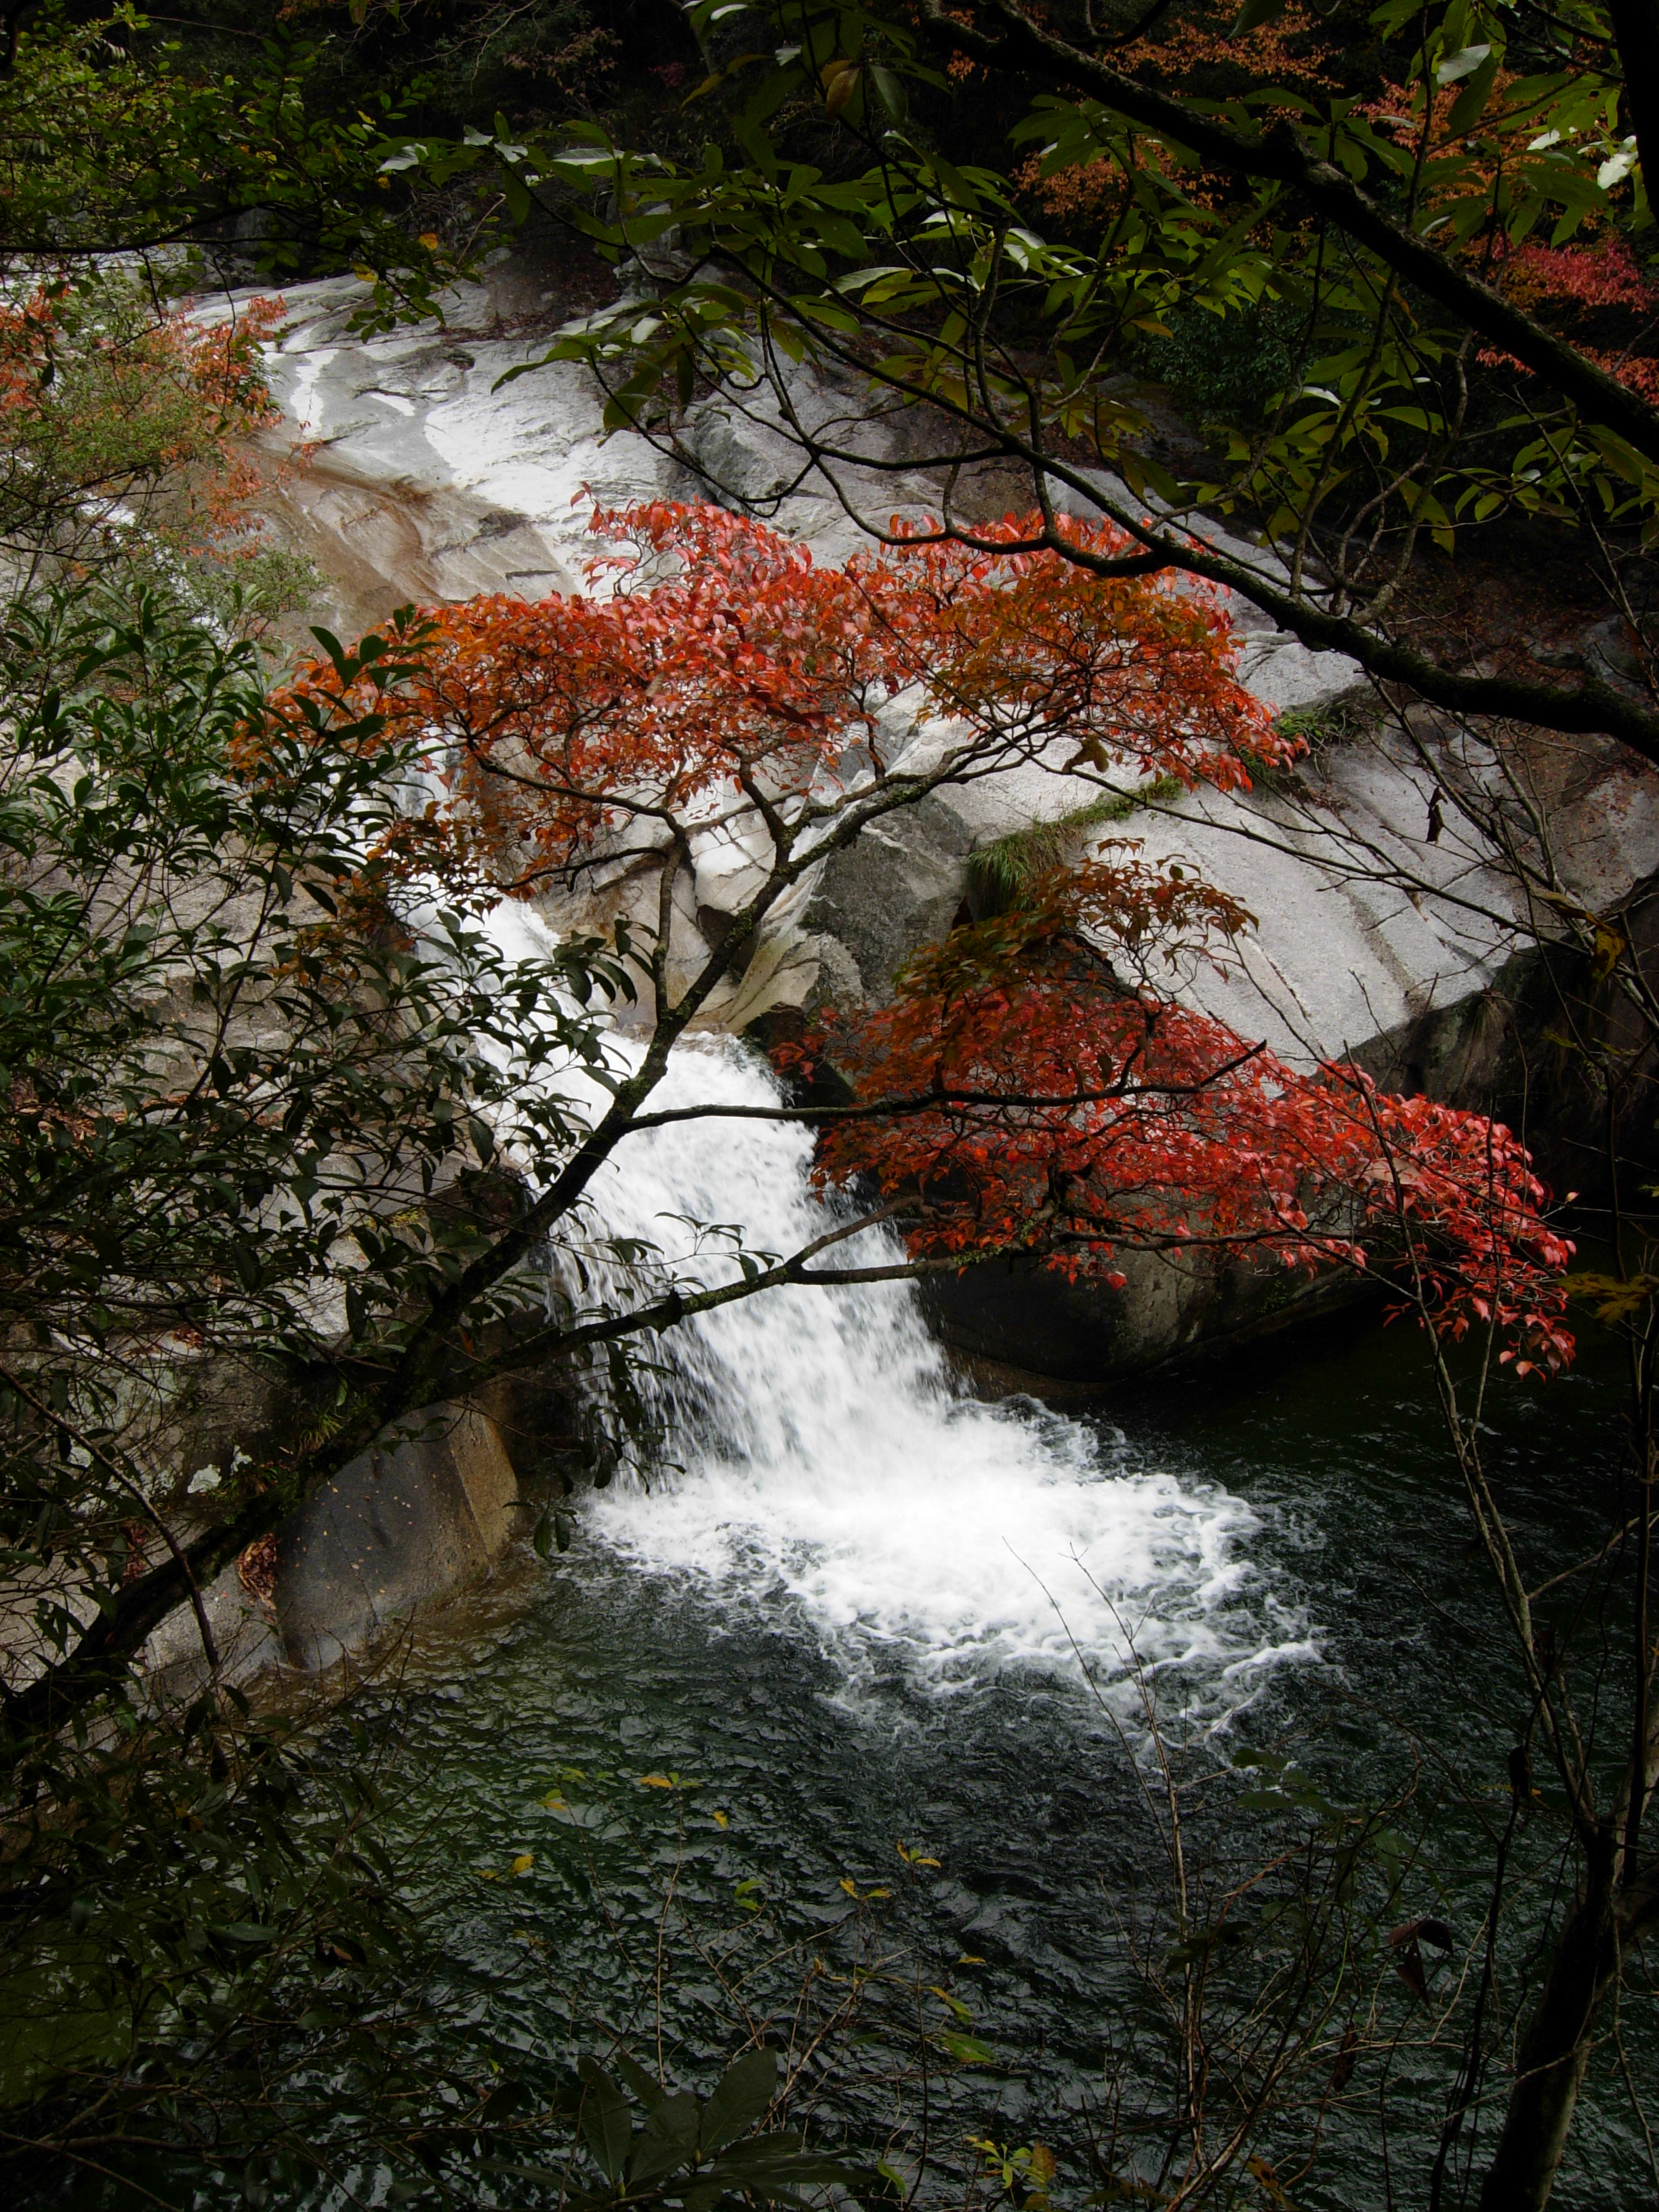 【携程攻略】婺源大鄣山卧龙谷景点,峡谷,瀑布,小溪,再加上秋天的色彩